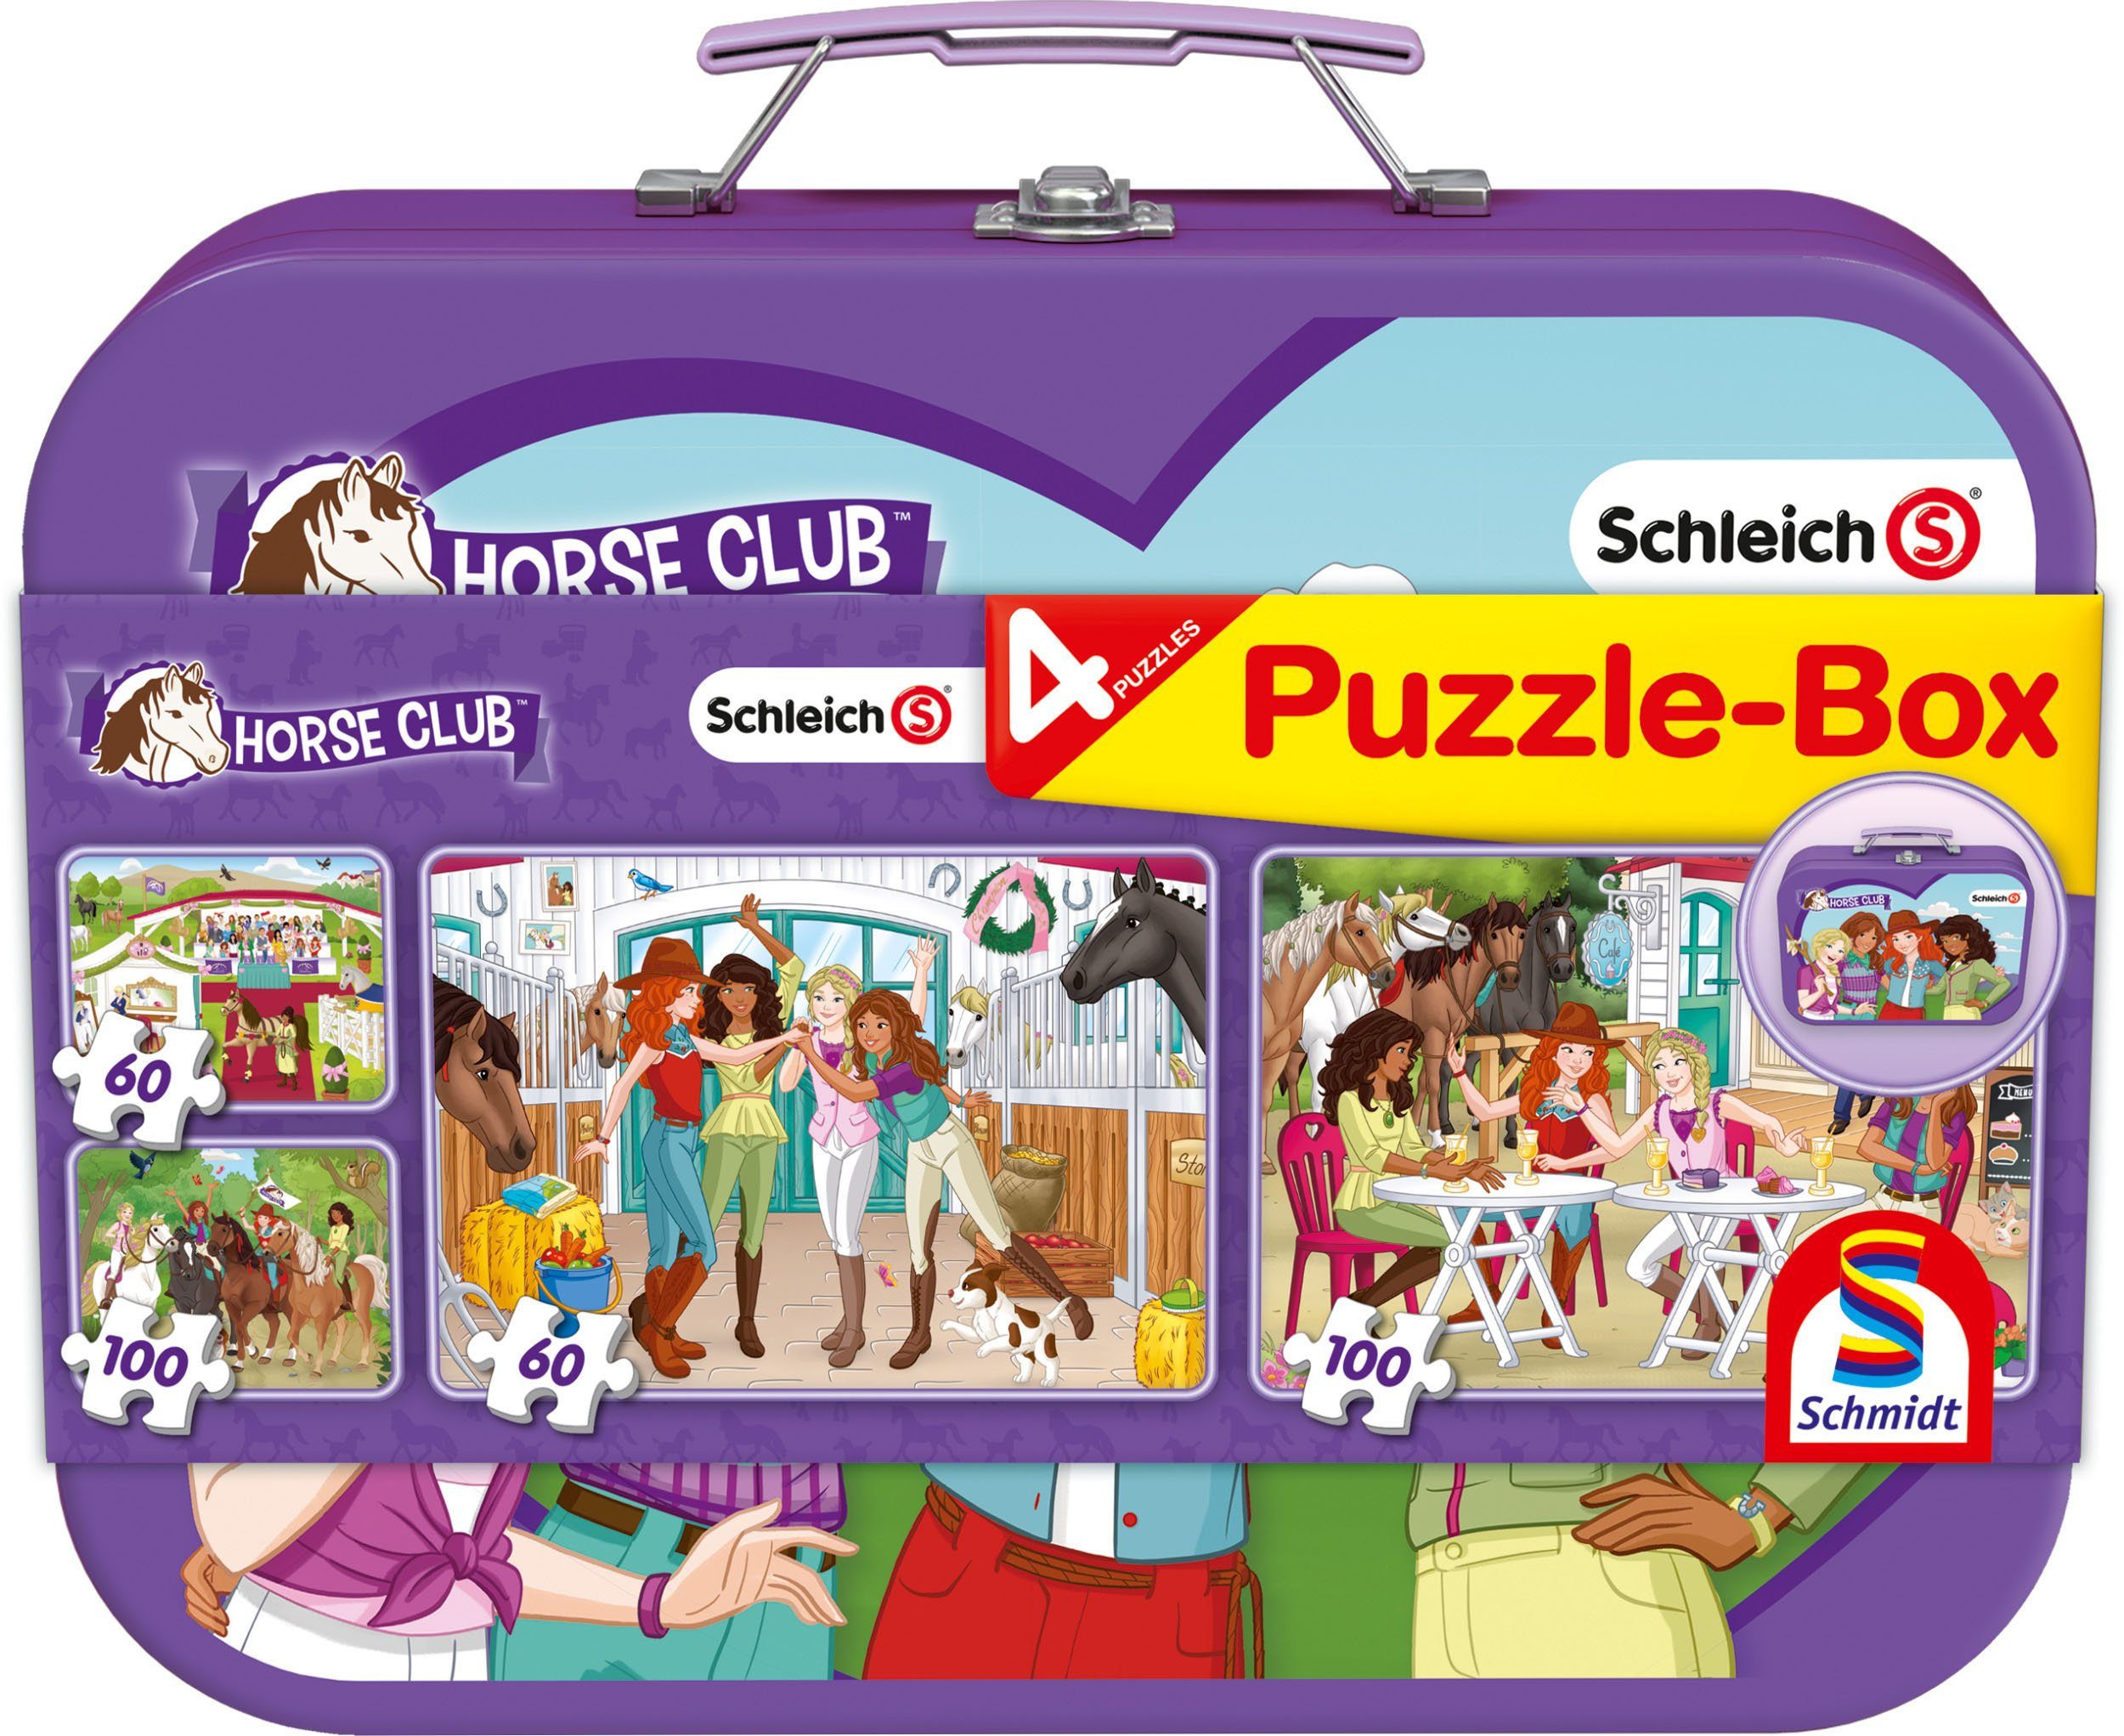 Schmidt Puzzle-Box, 2x100 im 2x60, Horse Puzzle Metallkoffer Spiele Schleich, Teile, 320 Club, Puzzleteile,